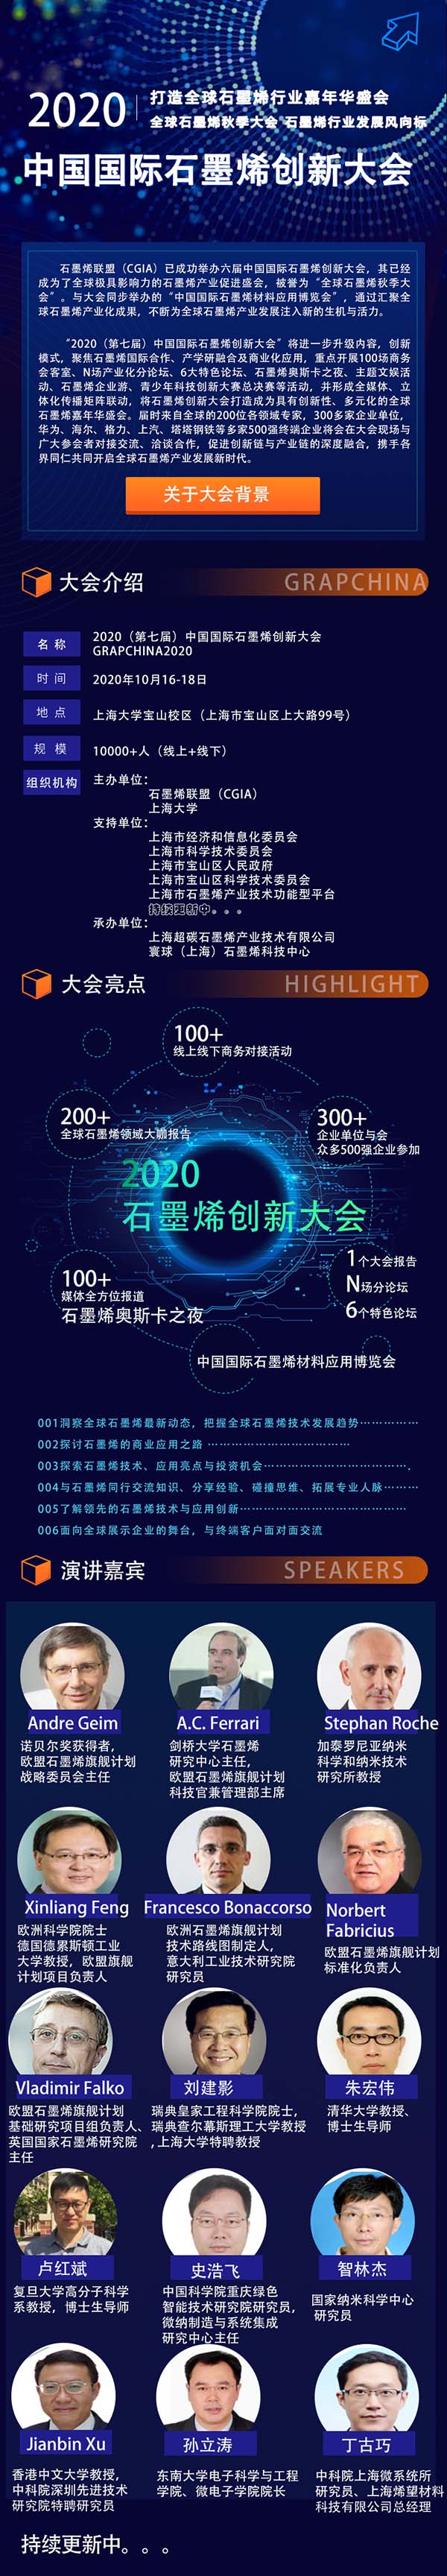 2020中国国际石墨烯创新大会震撼来袭，100+全球大咖、300+参会客户、500强企业......精彩纷呈，等你来撩！